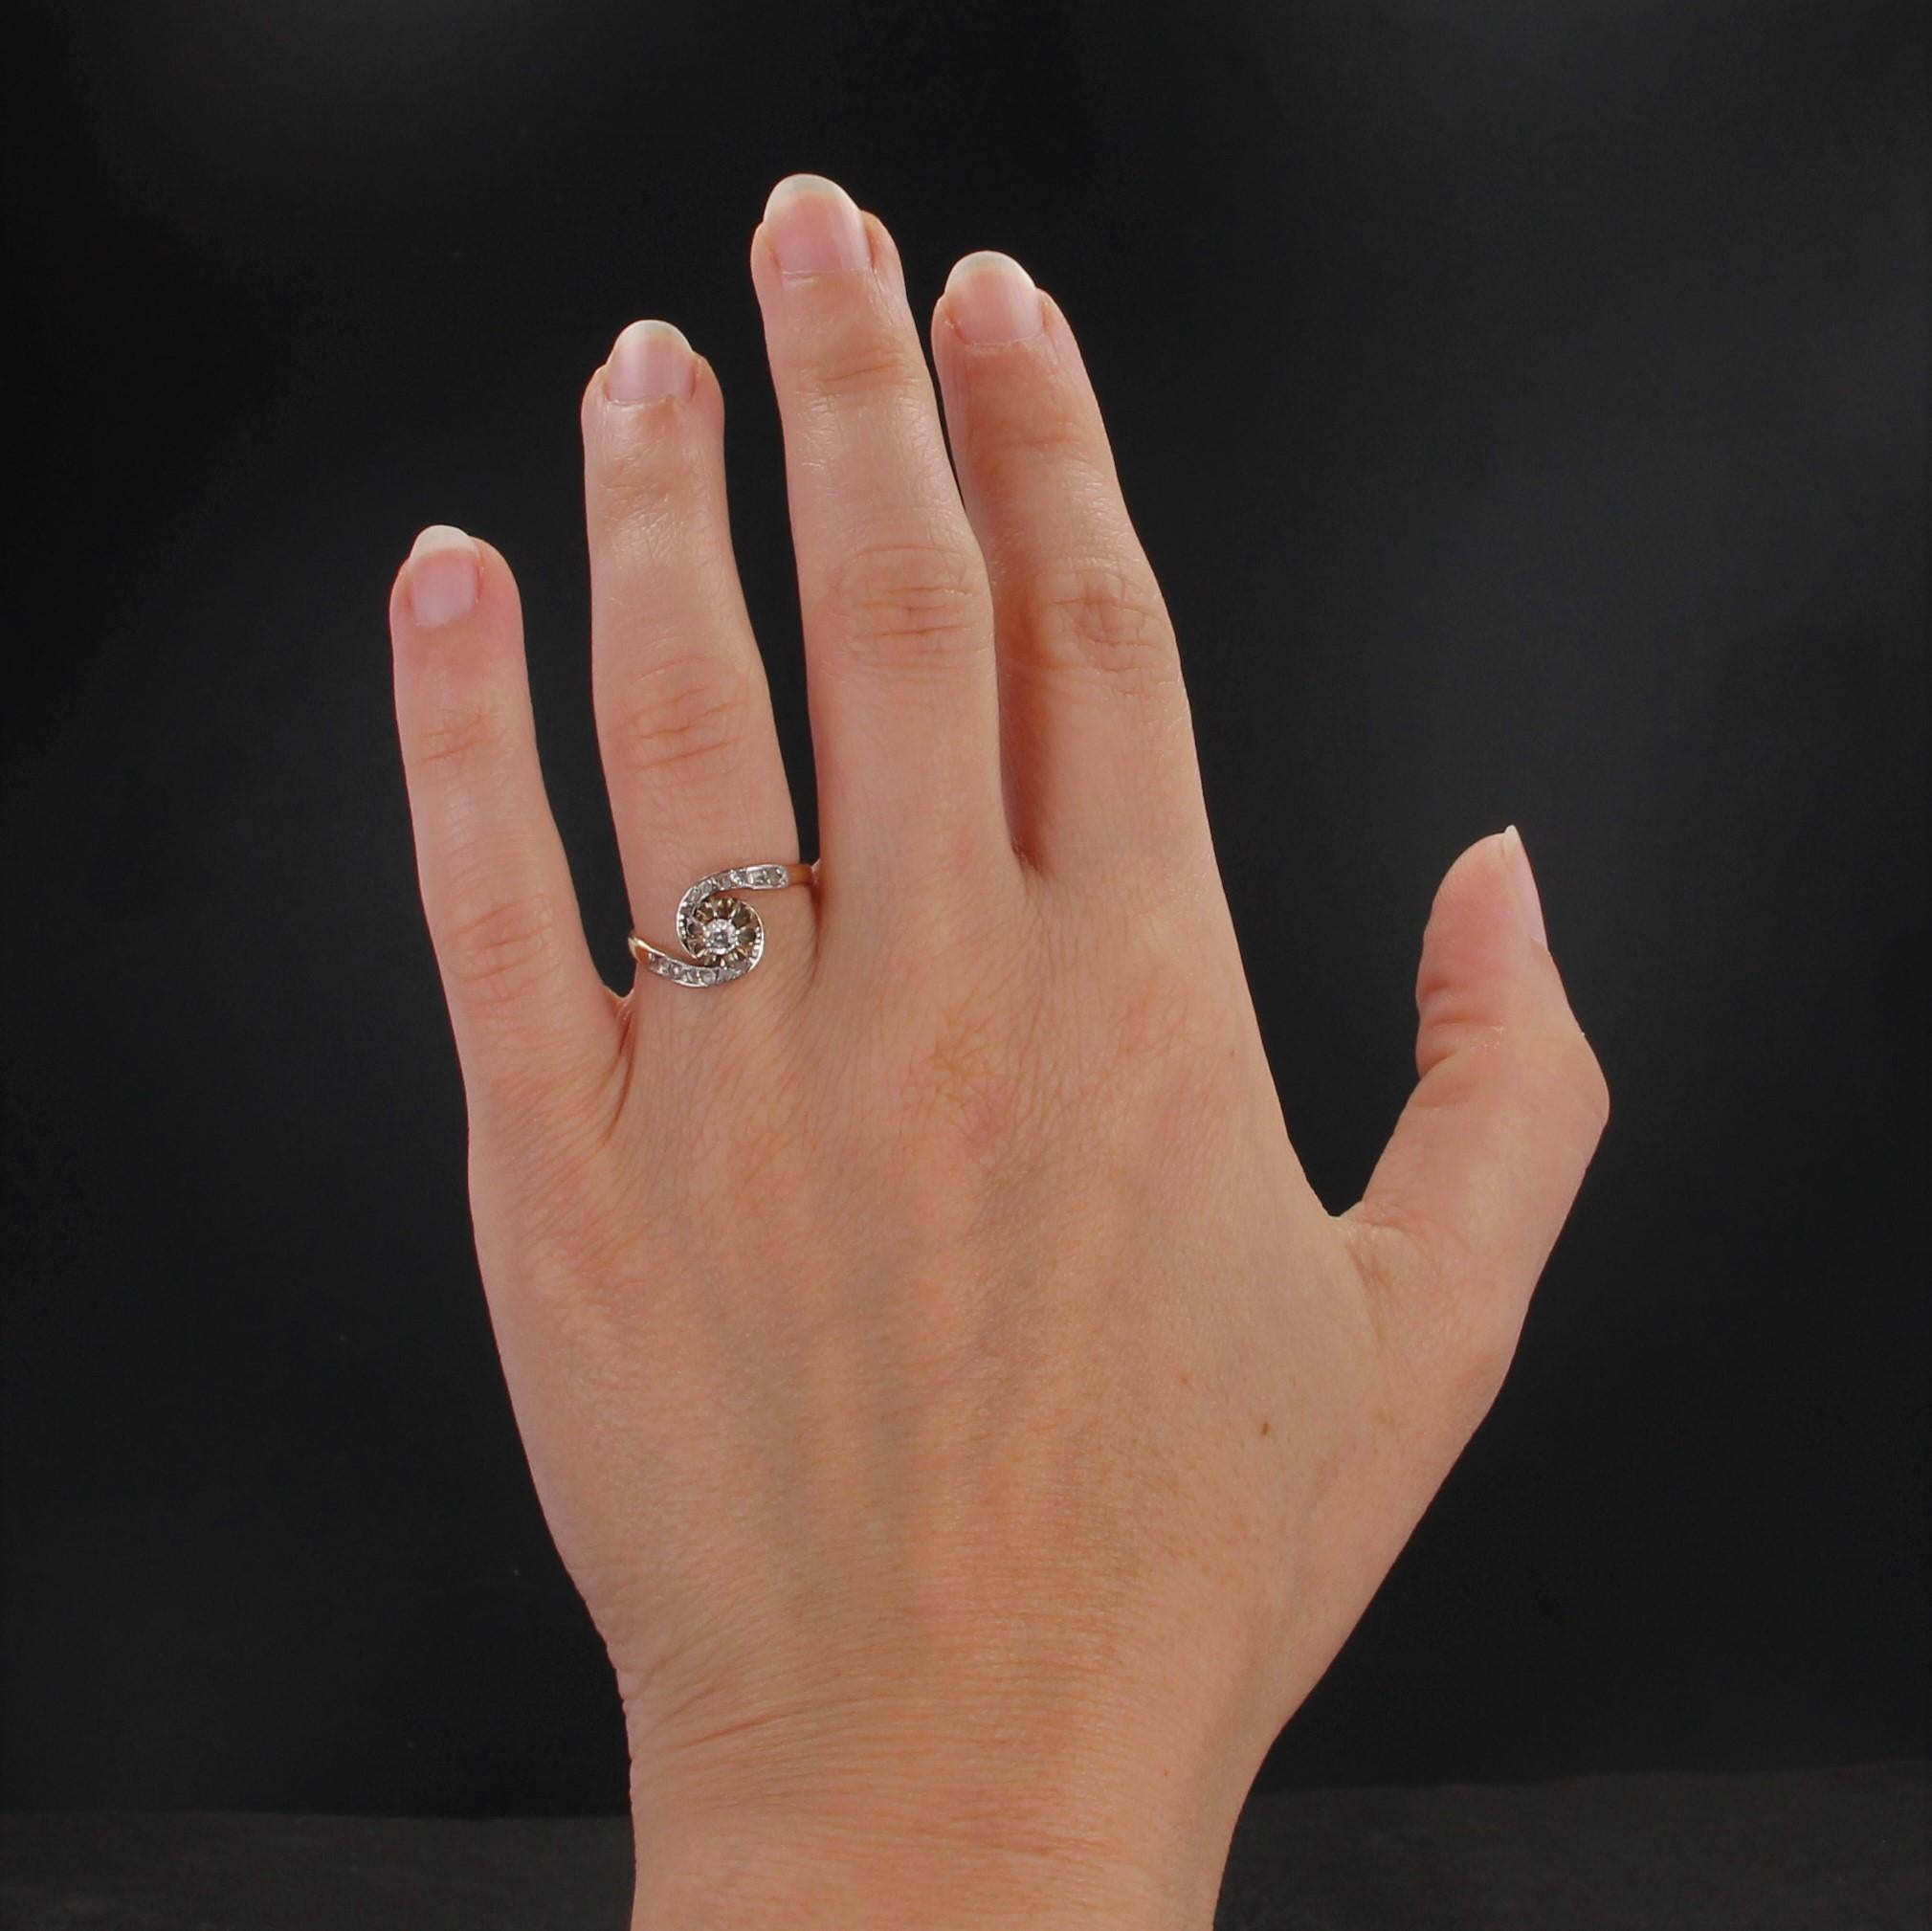 Ring aus 18 Karat Gelbgold und Platin.
Antiker Ring mit einem Wirbel aus Diamanten im Rosenschliff, der in der Mitte einen antiken Diamanten im Brillantschliff hält.
Gesamtgewicht des Hauptdiamanten: ca. 0.10 Karat.
Höhe: ca. 9,5 mm, Breite: ca. 7,5